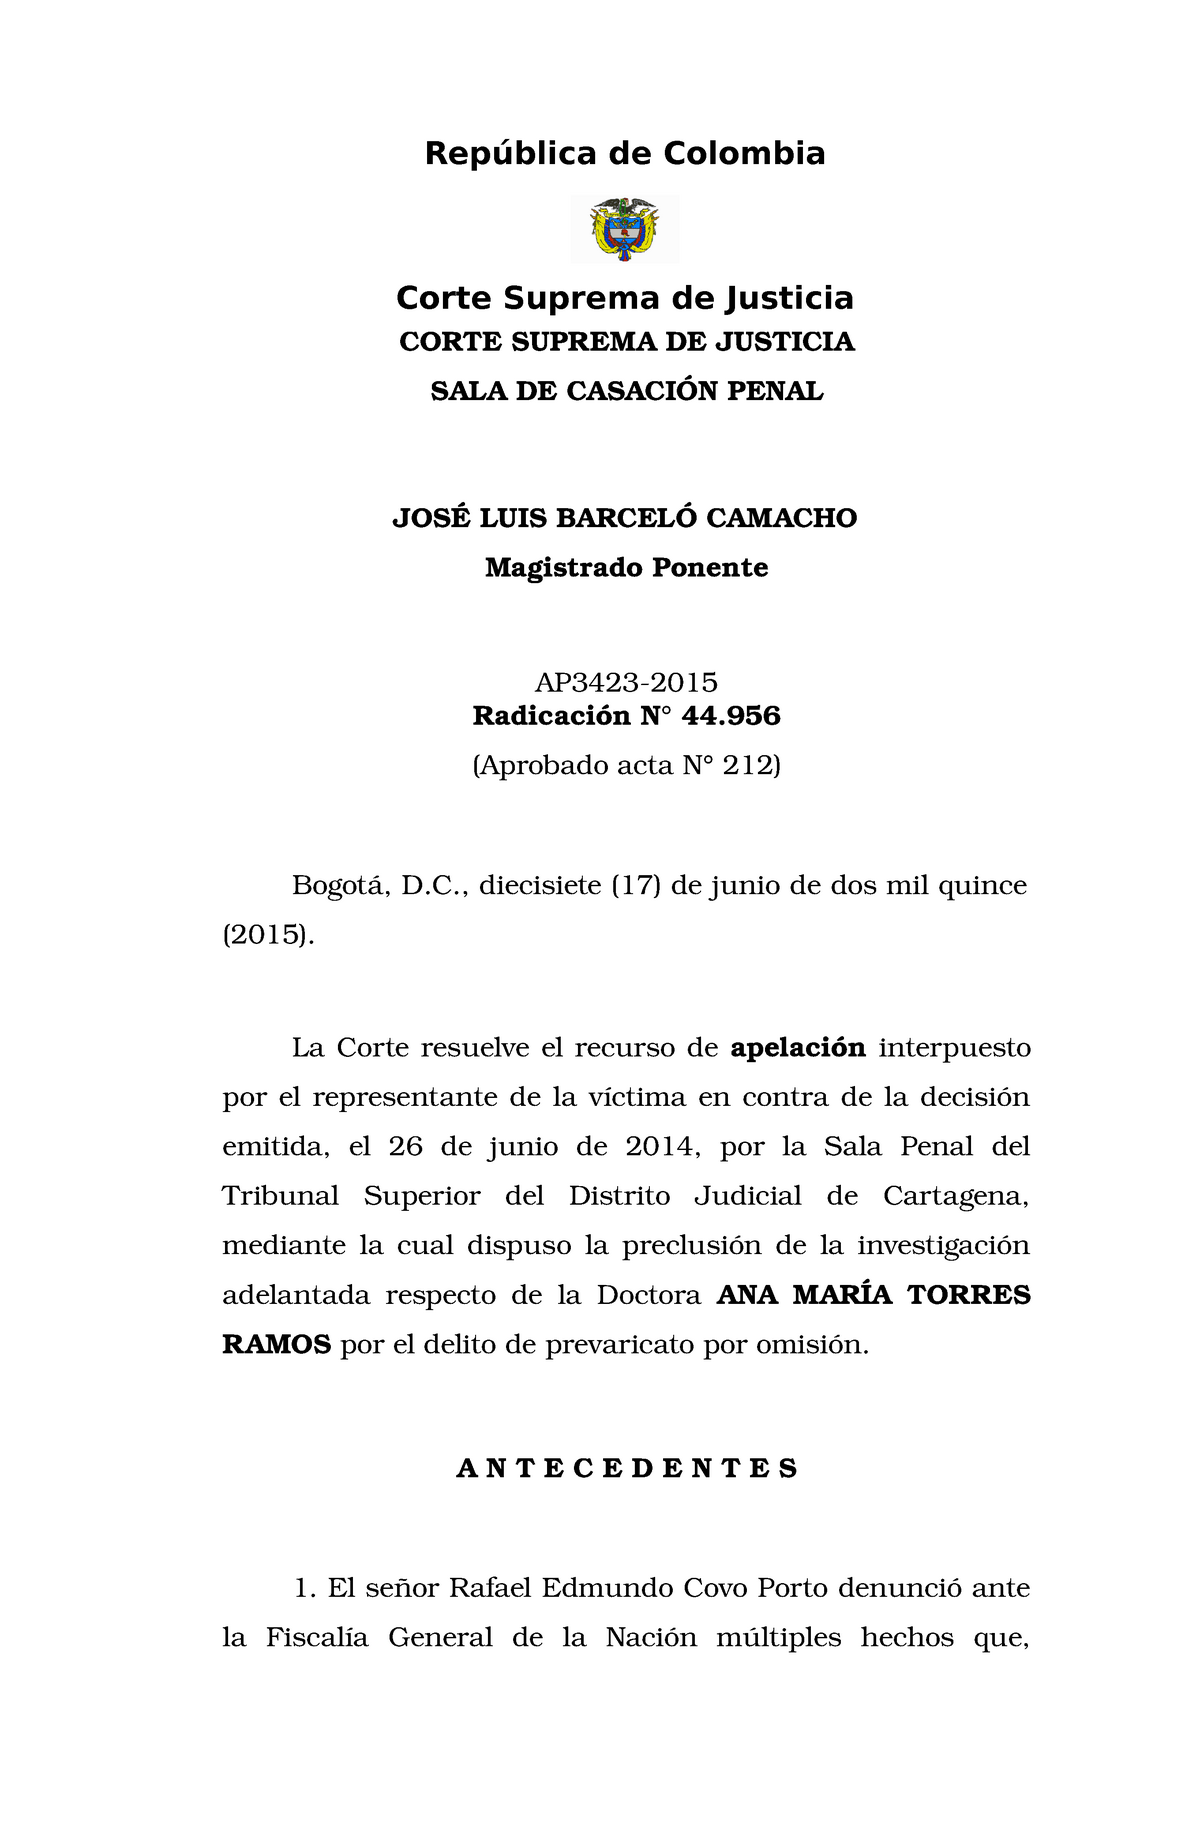 Ap3423 15 Sentencia Sobre Abuso De Autoridad Rep Blica De Colombia Corte Suprema De Justicia Corte Suprema De Justicia Sala De Casaci Penal Jos Studocu